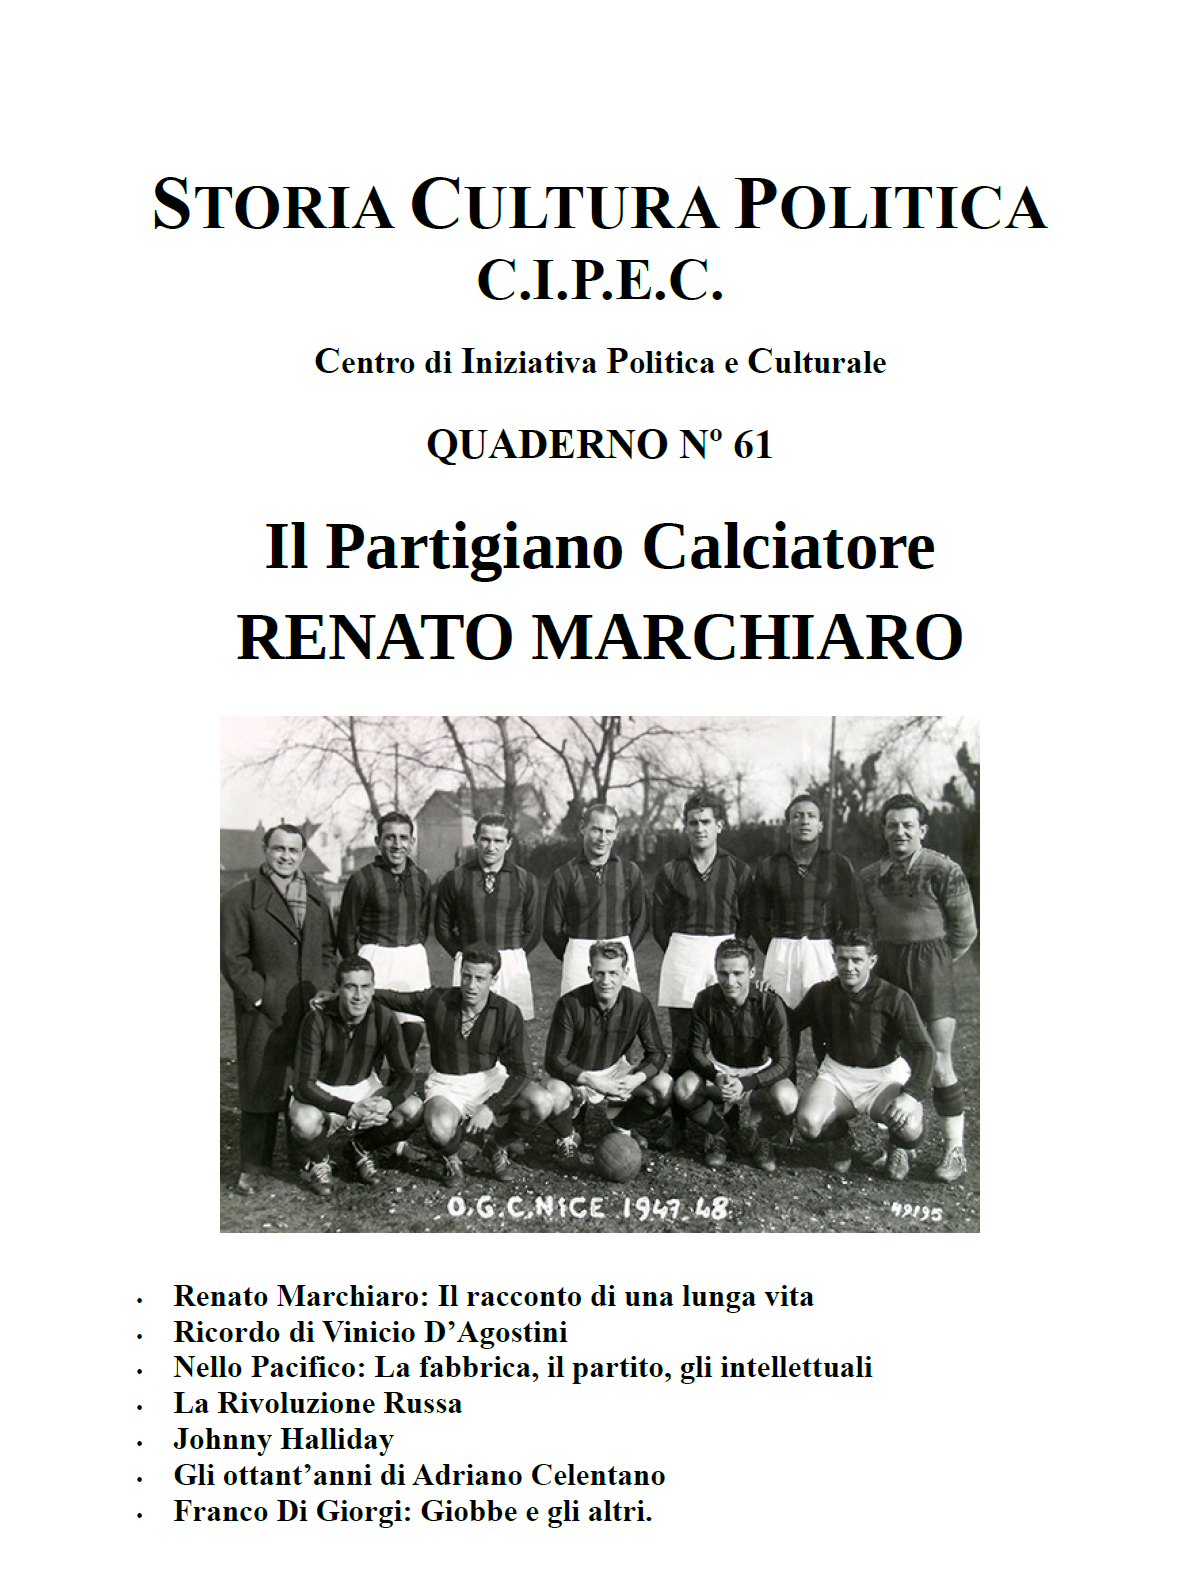 Copertina del Quaderno CIPEC Numero 61, Renato Marchiaro partigiano calciatore